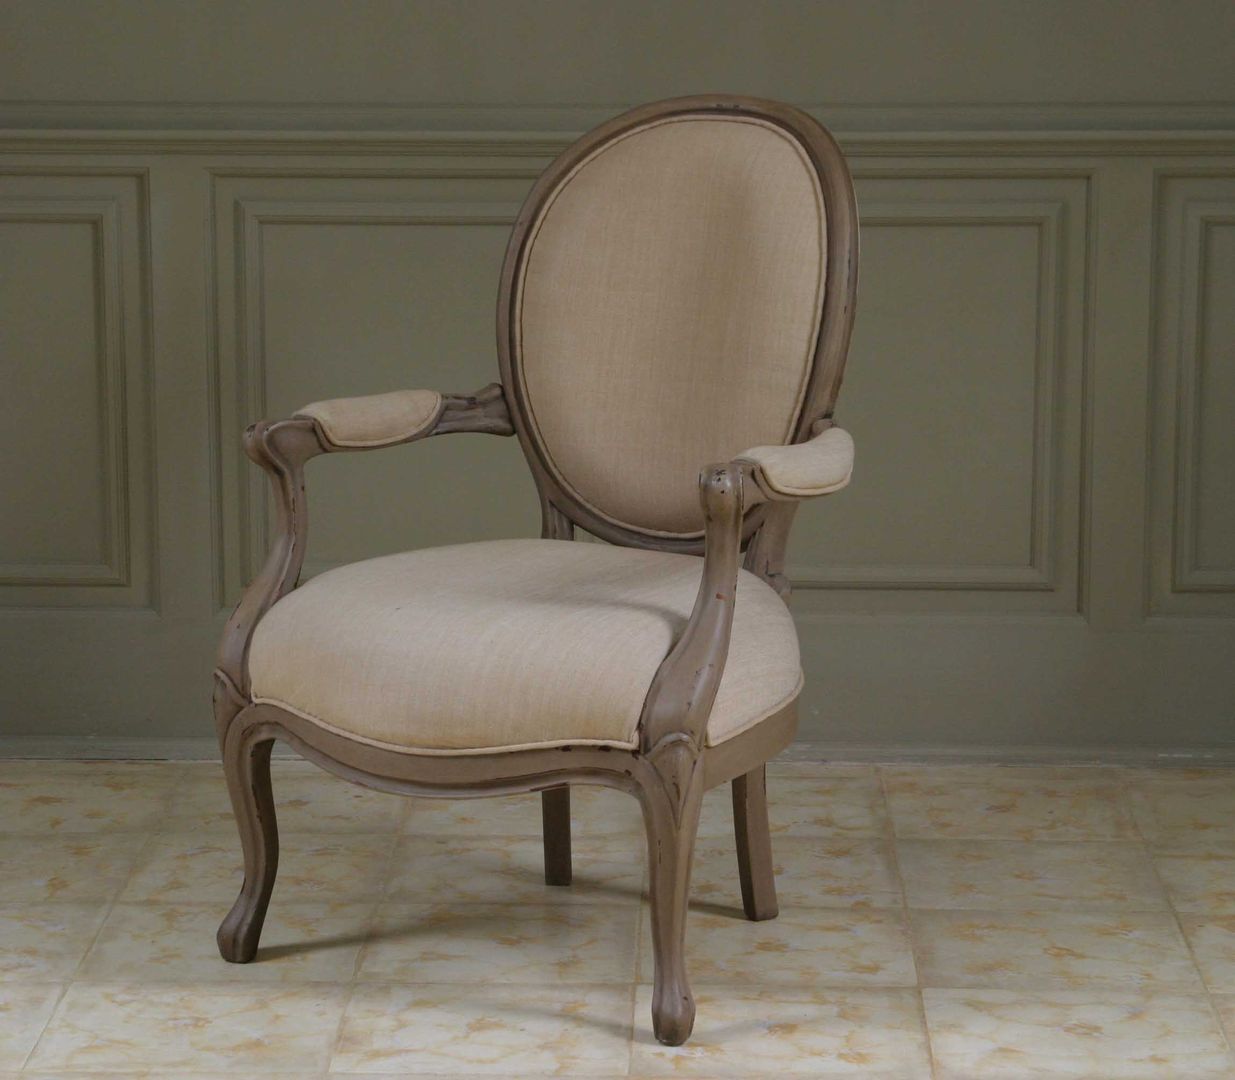 Colección II Chair and sofa, The best houses The best houses غرفة المعيشة كراسي ومقاعد